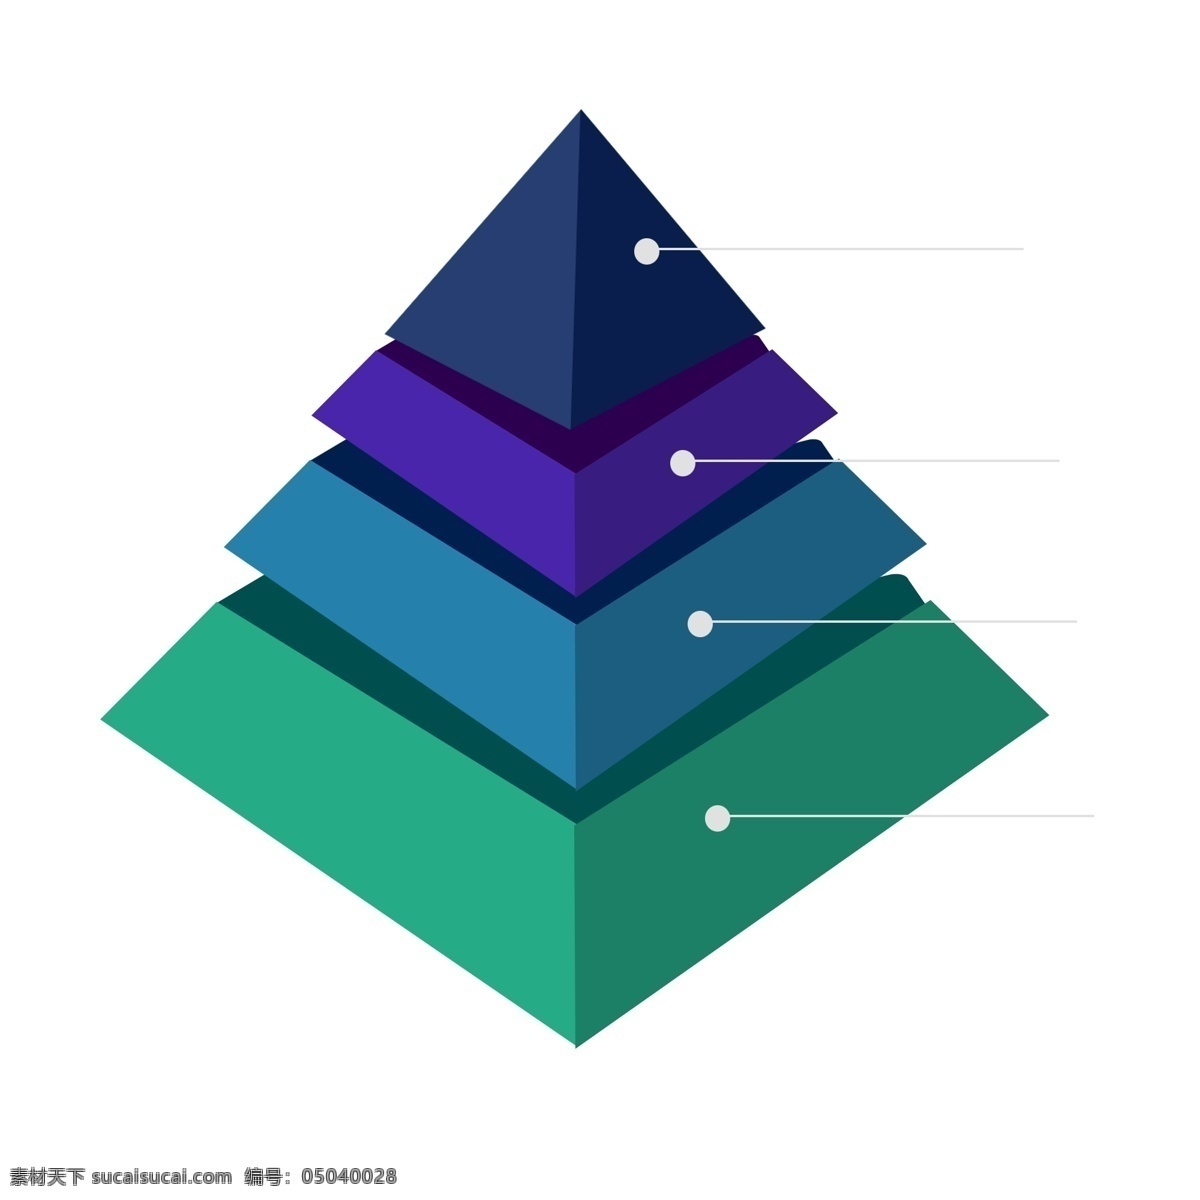 金字塔 型 元素 三角形 分析图 公司ppt 应用数据 软件界面 免费ppt 装饰 企业 模板 ppt图表